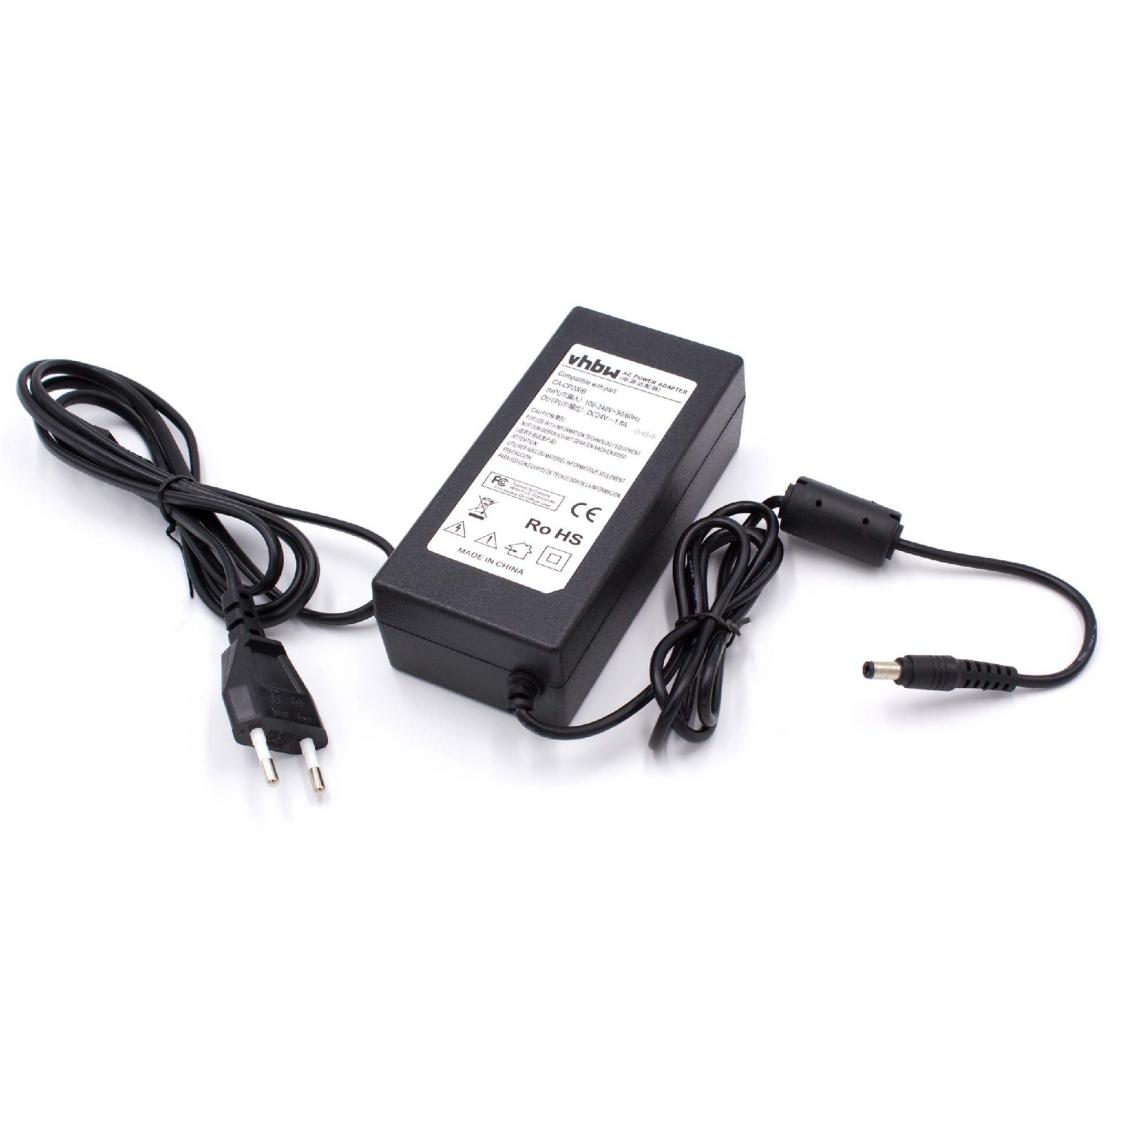 Vhbw - vhbw Imprimante Adaptateur bloc d'alimentation Câble d'alimentation Chargeur compatible avec Canon Selphy CP500, CP510, CP600 imprimante; 115cm, 1.8A - Accessoires alimentation